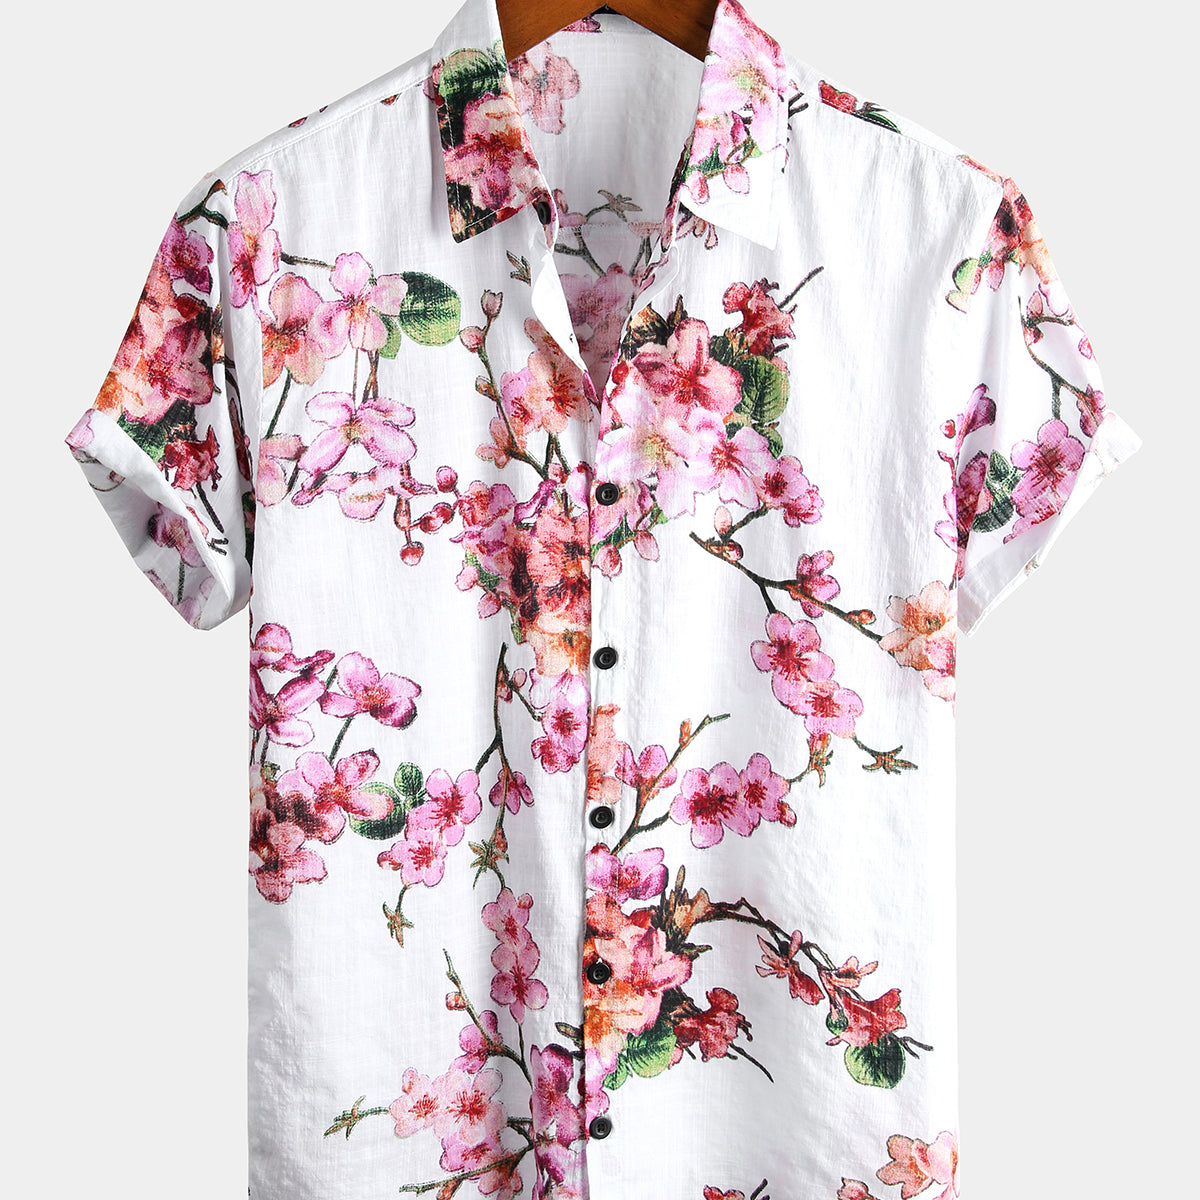 Men's Flower Print Cotton Hawaiian Floral Button Short Sleeve Shirt